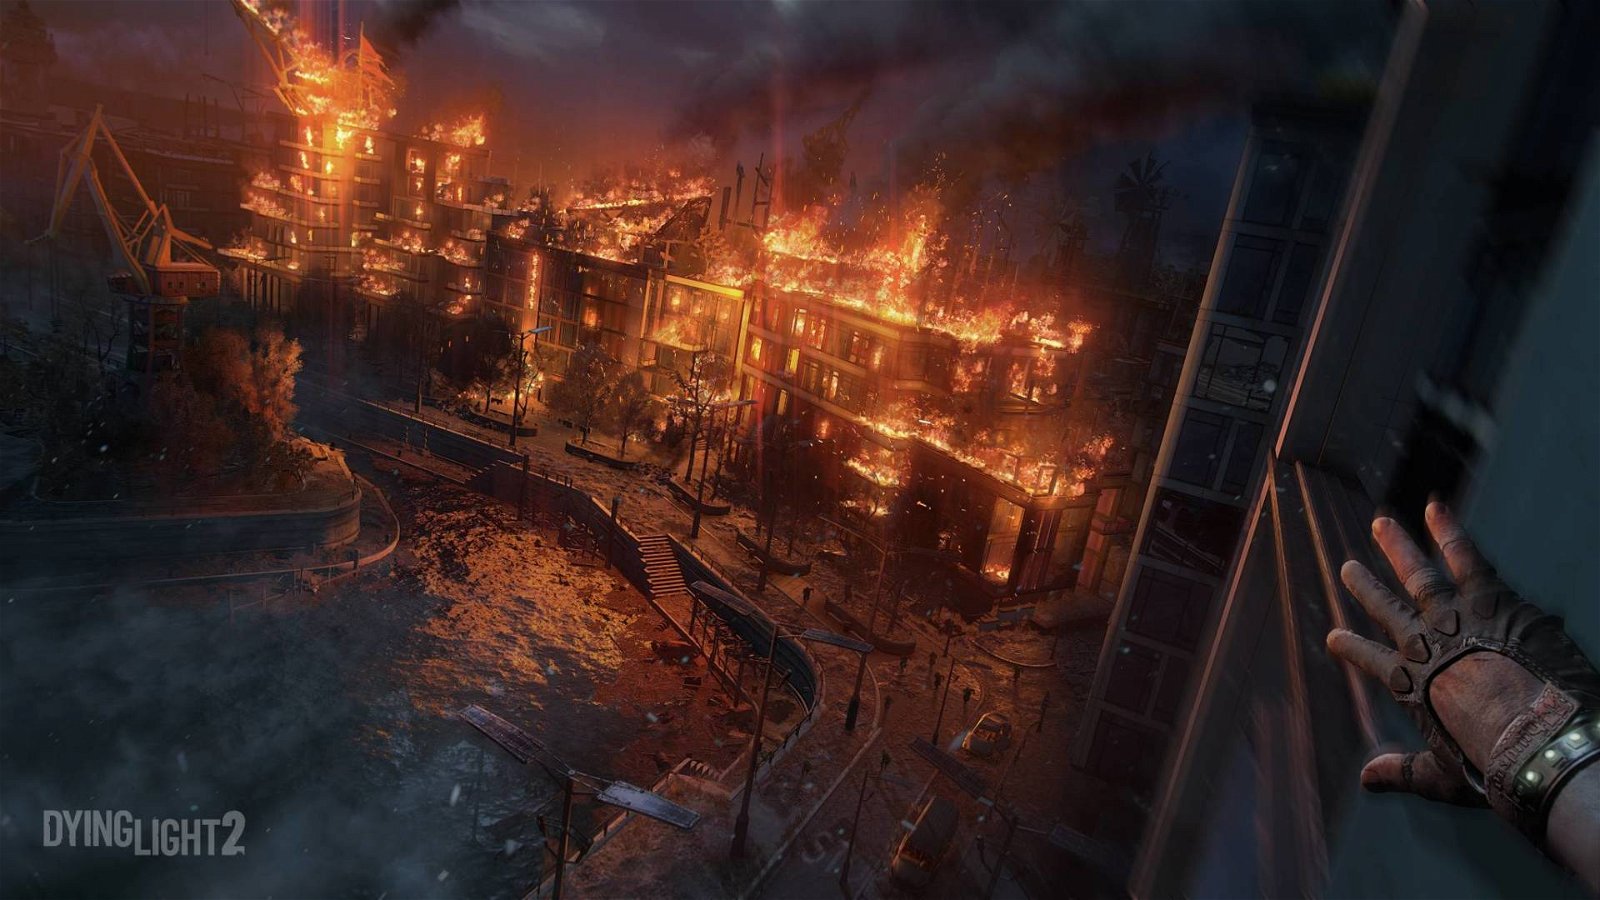 Immagine di Dying Light 2: sviluppo difficile, una feature non verrà inserita